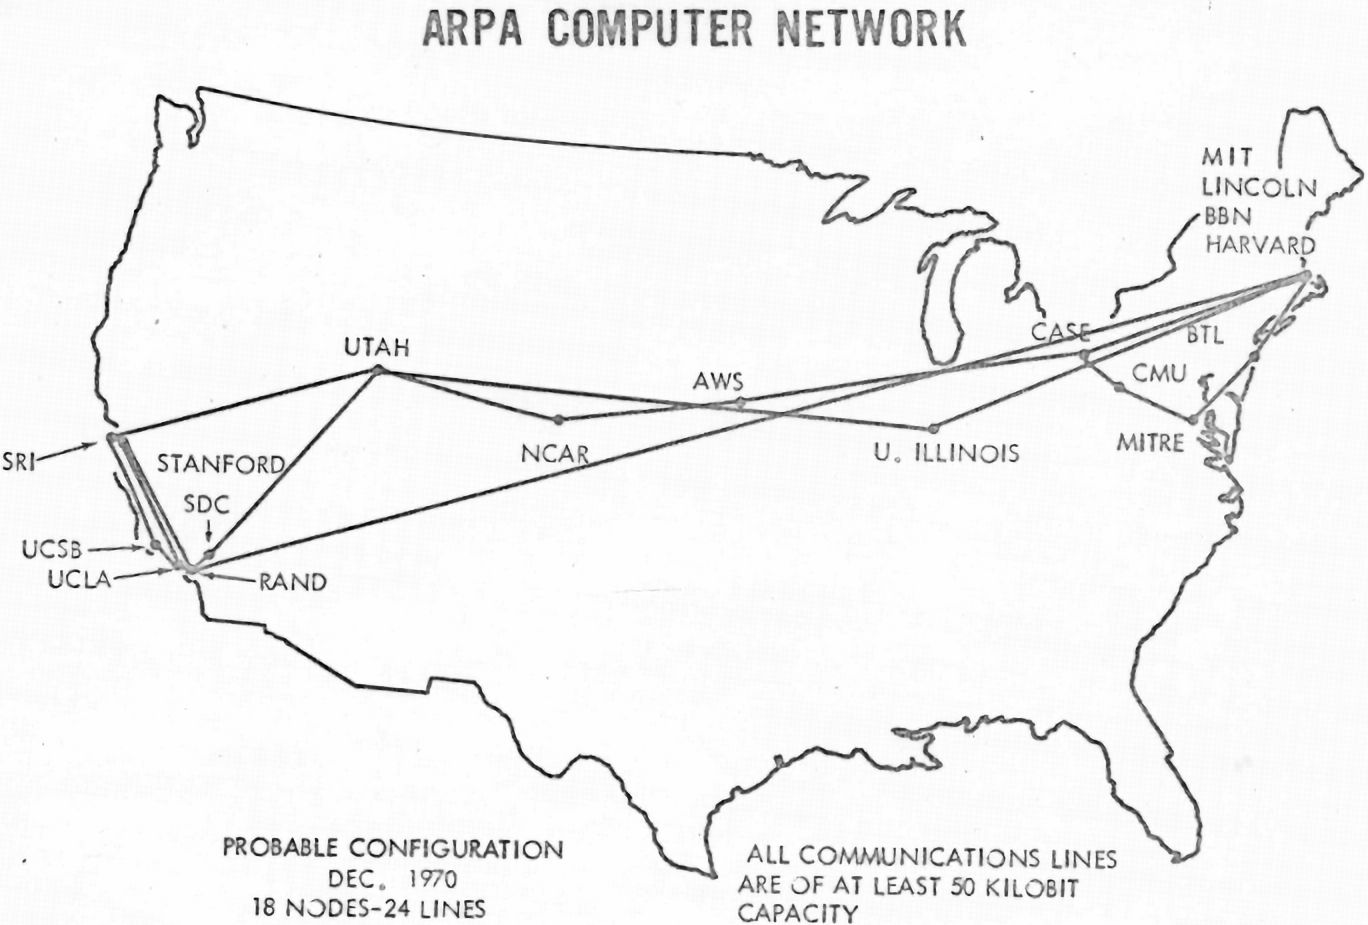 3 июля 1969 года Калифорнийский университет объявил, что станет первым звеном национальной компьютерной сети